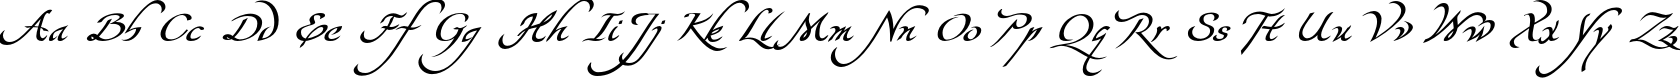 Пример написания английского алфавита шрифтом Yevida-Potens